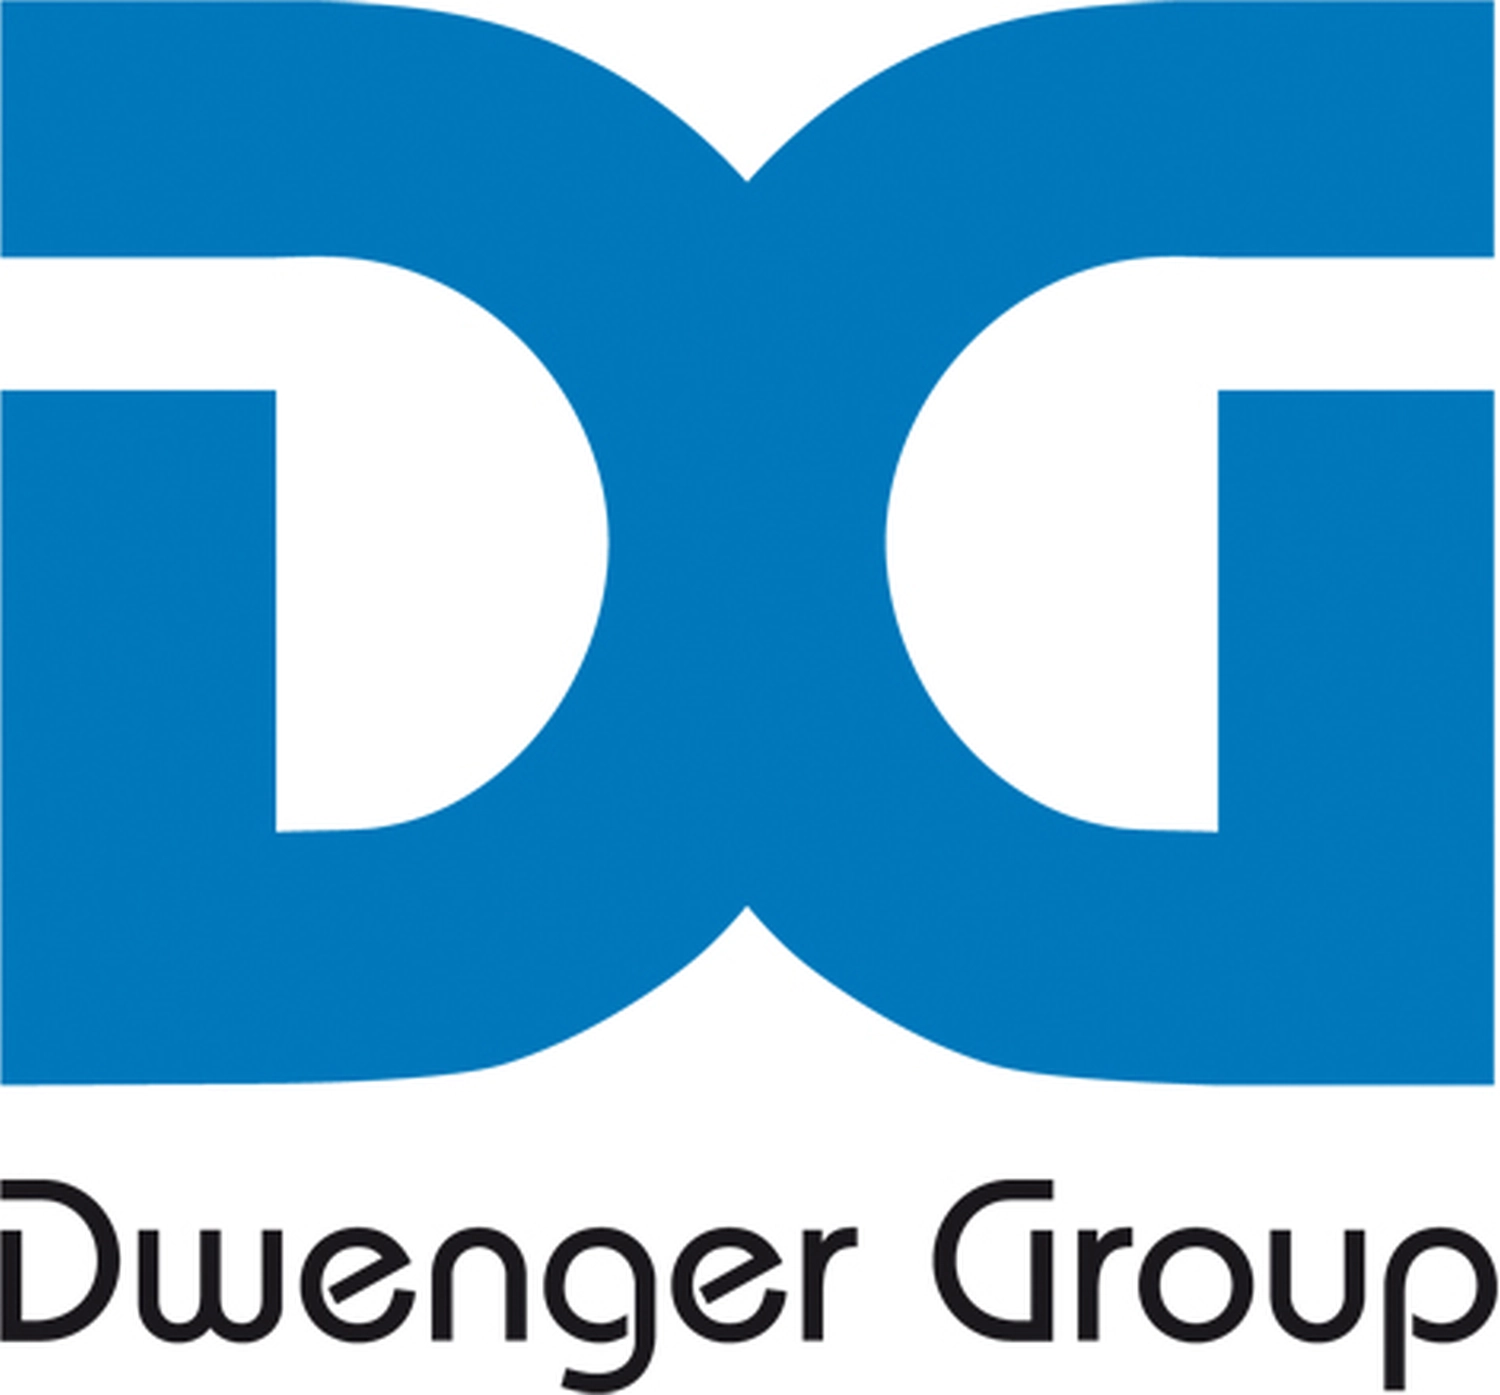 DG Logo